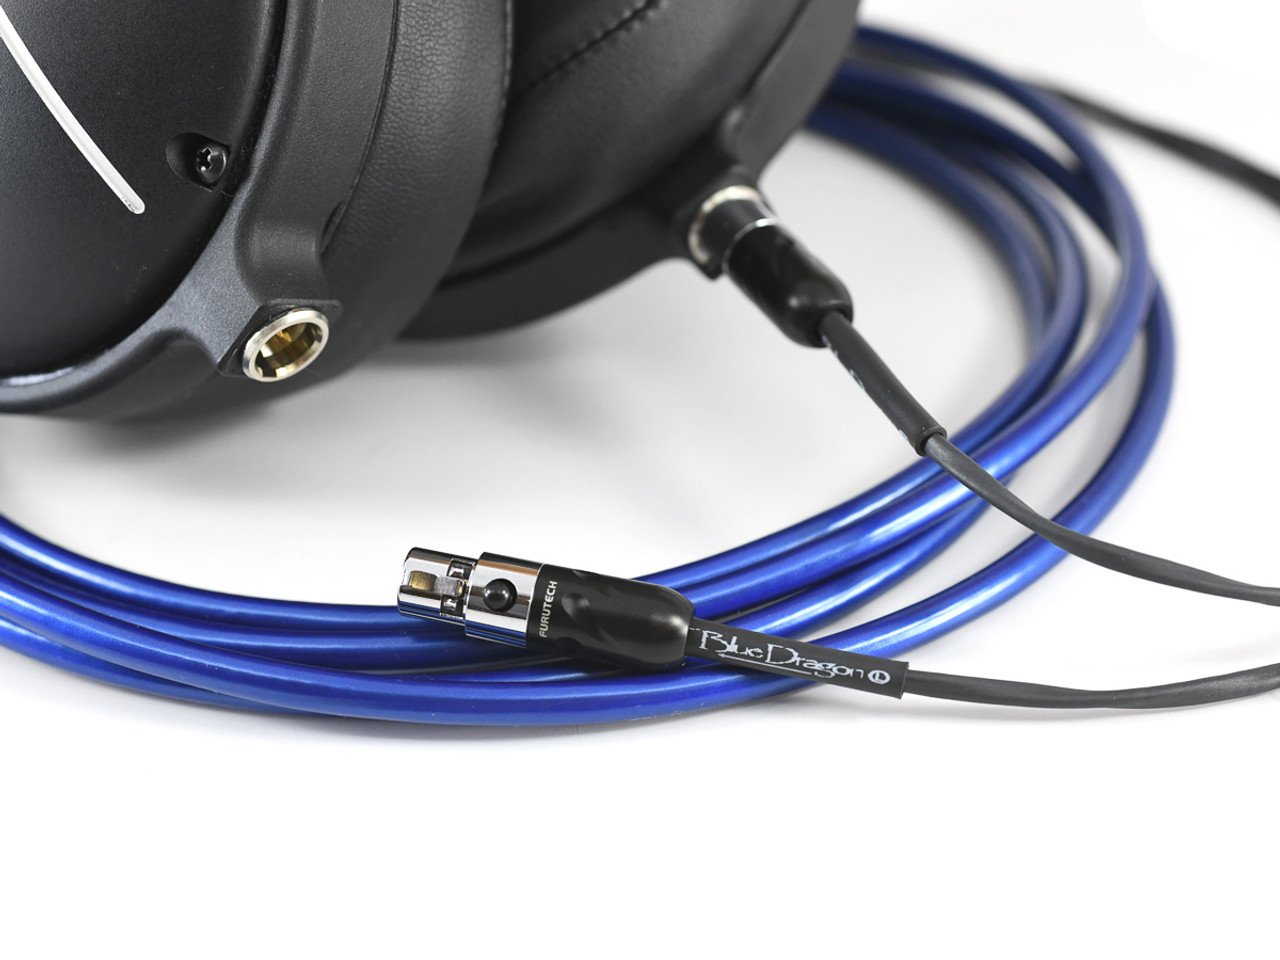 Blue Dragon Premium Cable for Audeze Headphones